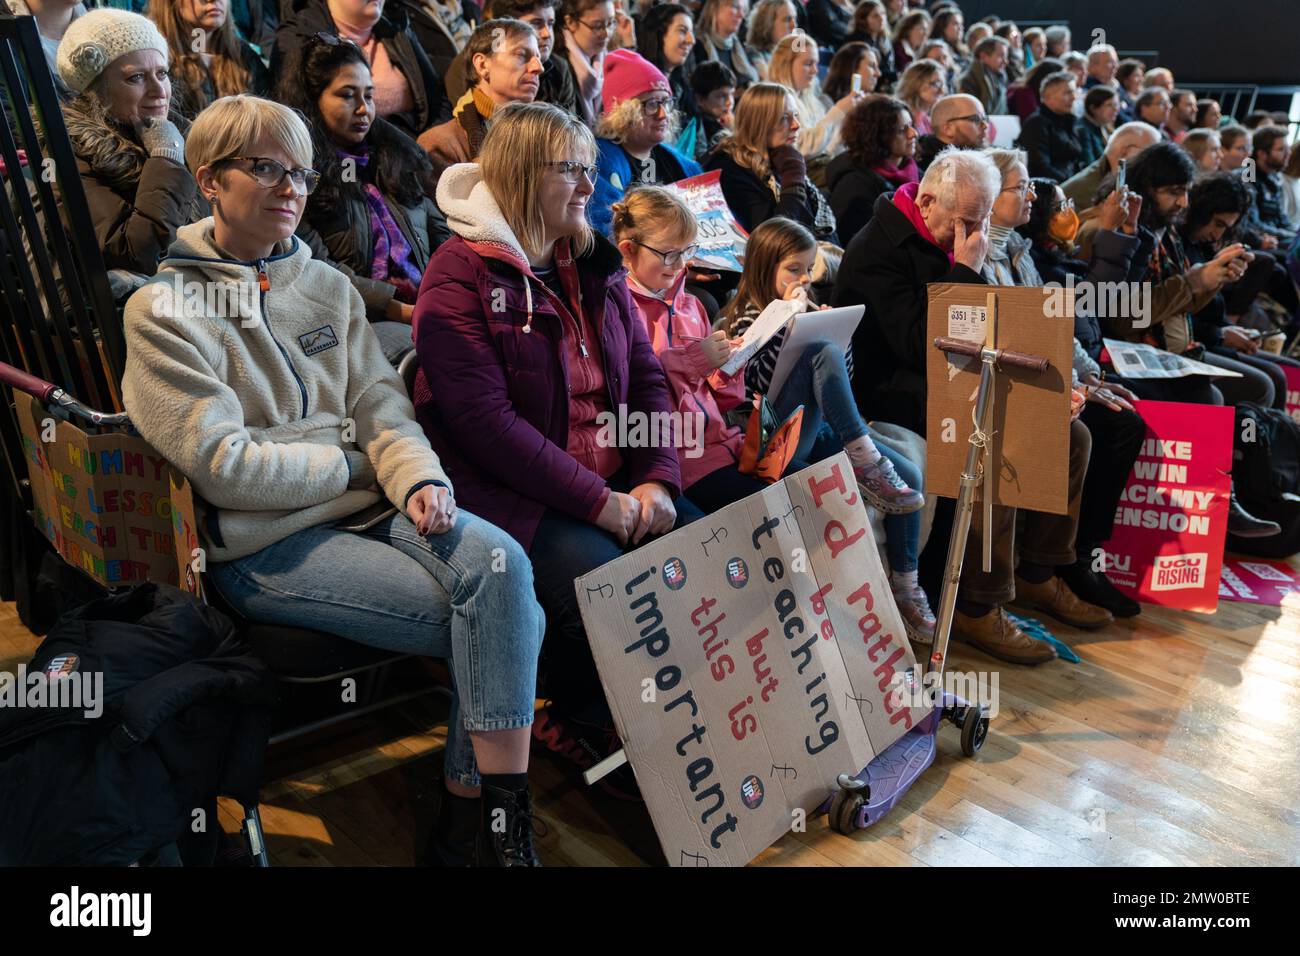 Exeter, England, 01. Februar 2023, eine Frau im Publikum der Corn Exchange hält ein Banner mit der Aufschrift "IÕd lieber unterrichten, aber das ist wichtig". Sie war eine von Hunderten von Menschen, die am Ende einer kurzen Kundgebung in Exeter Reden zuhörten. Mehrere hunderttausend Menschen streikten, um gegen Löhne und andere Beschäftigungsrechte zu protestieren. Die Union für öffentliche und kommerzielle Dienstleistungen hatte mit rund 100.000 Streikenden die zweithöchste Zahl von Personen, die an der Arbeitskampagne teilnahmen. Einige ihrer Mitglieder konnten nicht öffentlich streiken, da auch Schulen aufgrund des Streiks von teachersÕ geschlossen wurden Stockfoto